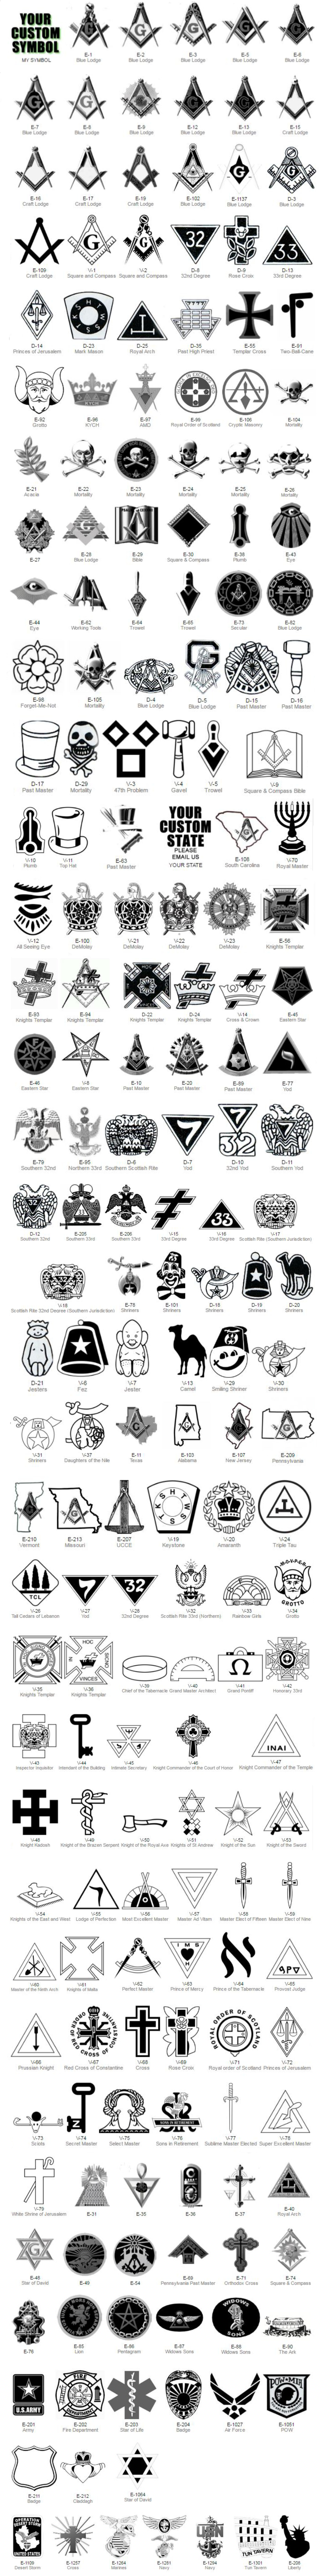 masonic-symbols-2.jpg